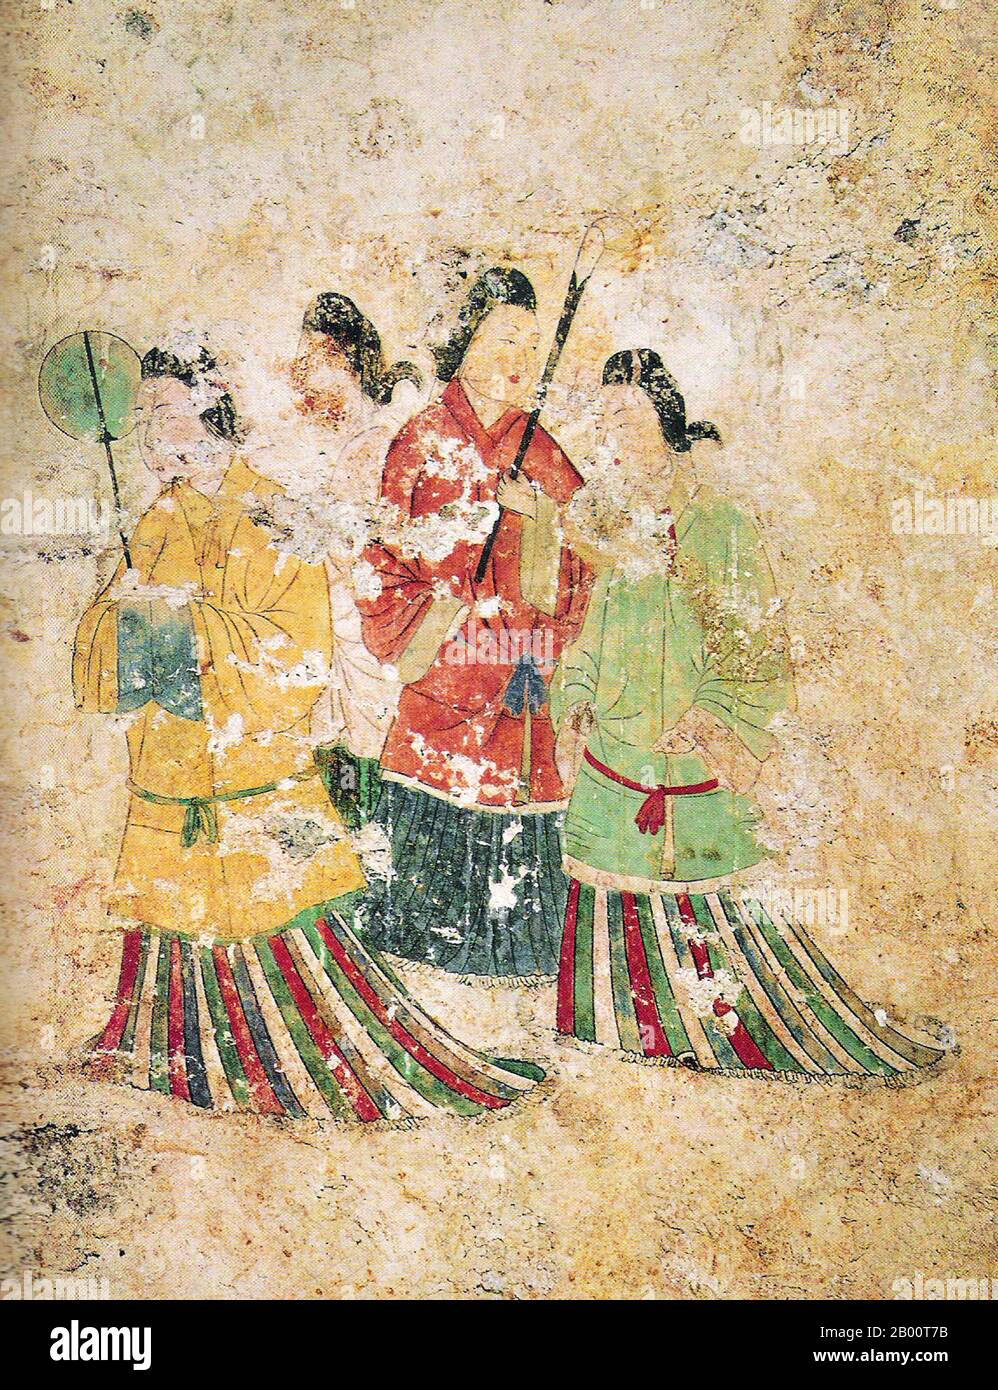 Giappone: Le 'Asuka Bijin' o 'belle donne del periodo Asuka', Tomba Takamatsuzuka, VI-VII secolo CE. La Tomba di Takamatsuzuka (Takamatsuzuka Kofun o 'Tall Pine Tree Ancient Burial Mound' è un'antica tomba circolare nel villaggio di Asuka, prefettura di Nara, Giappone. Risalente al VI-VII secolo d.C., contiene dipinti murali affrescati di cortigiani in stile Goguryeo. I dipinti sono in pieno colore con il rosso, blu, oro e argento lamina rappresentante quattro seguaci maschi e quattro abigail insieme con il drago Azure, la tartaruga Nera, la tigre Bianca, e Vermilion Bird gruppi di stelle. Foto Stock